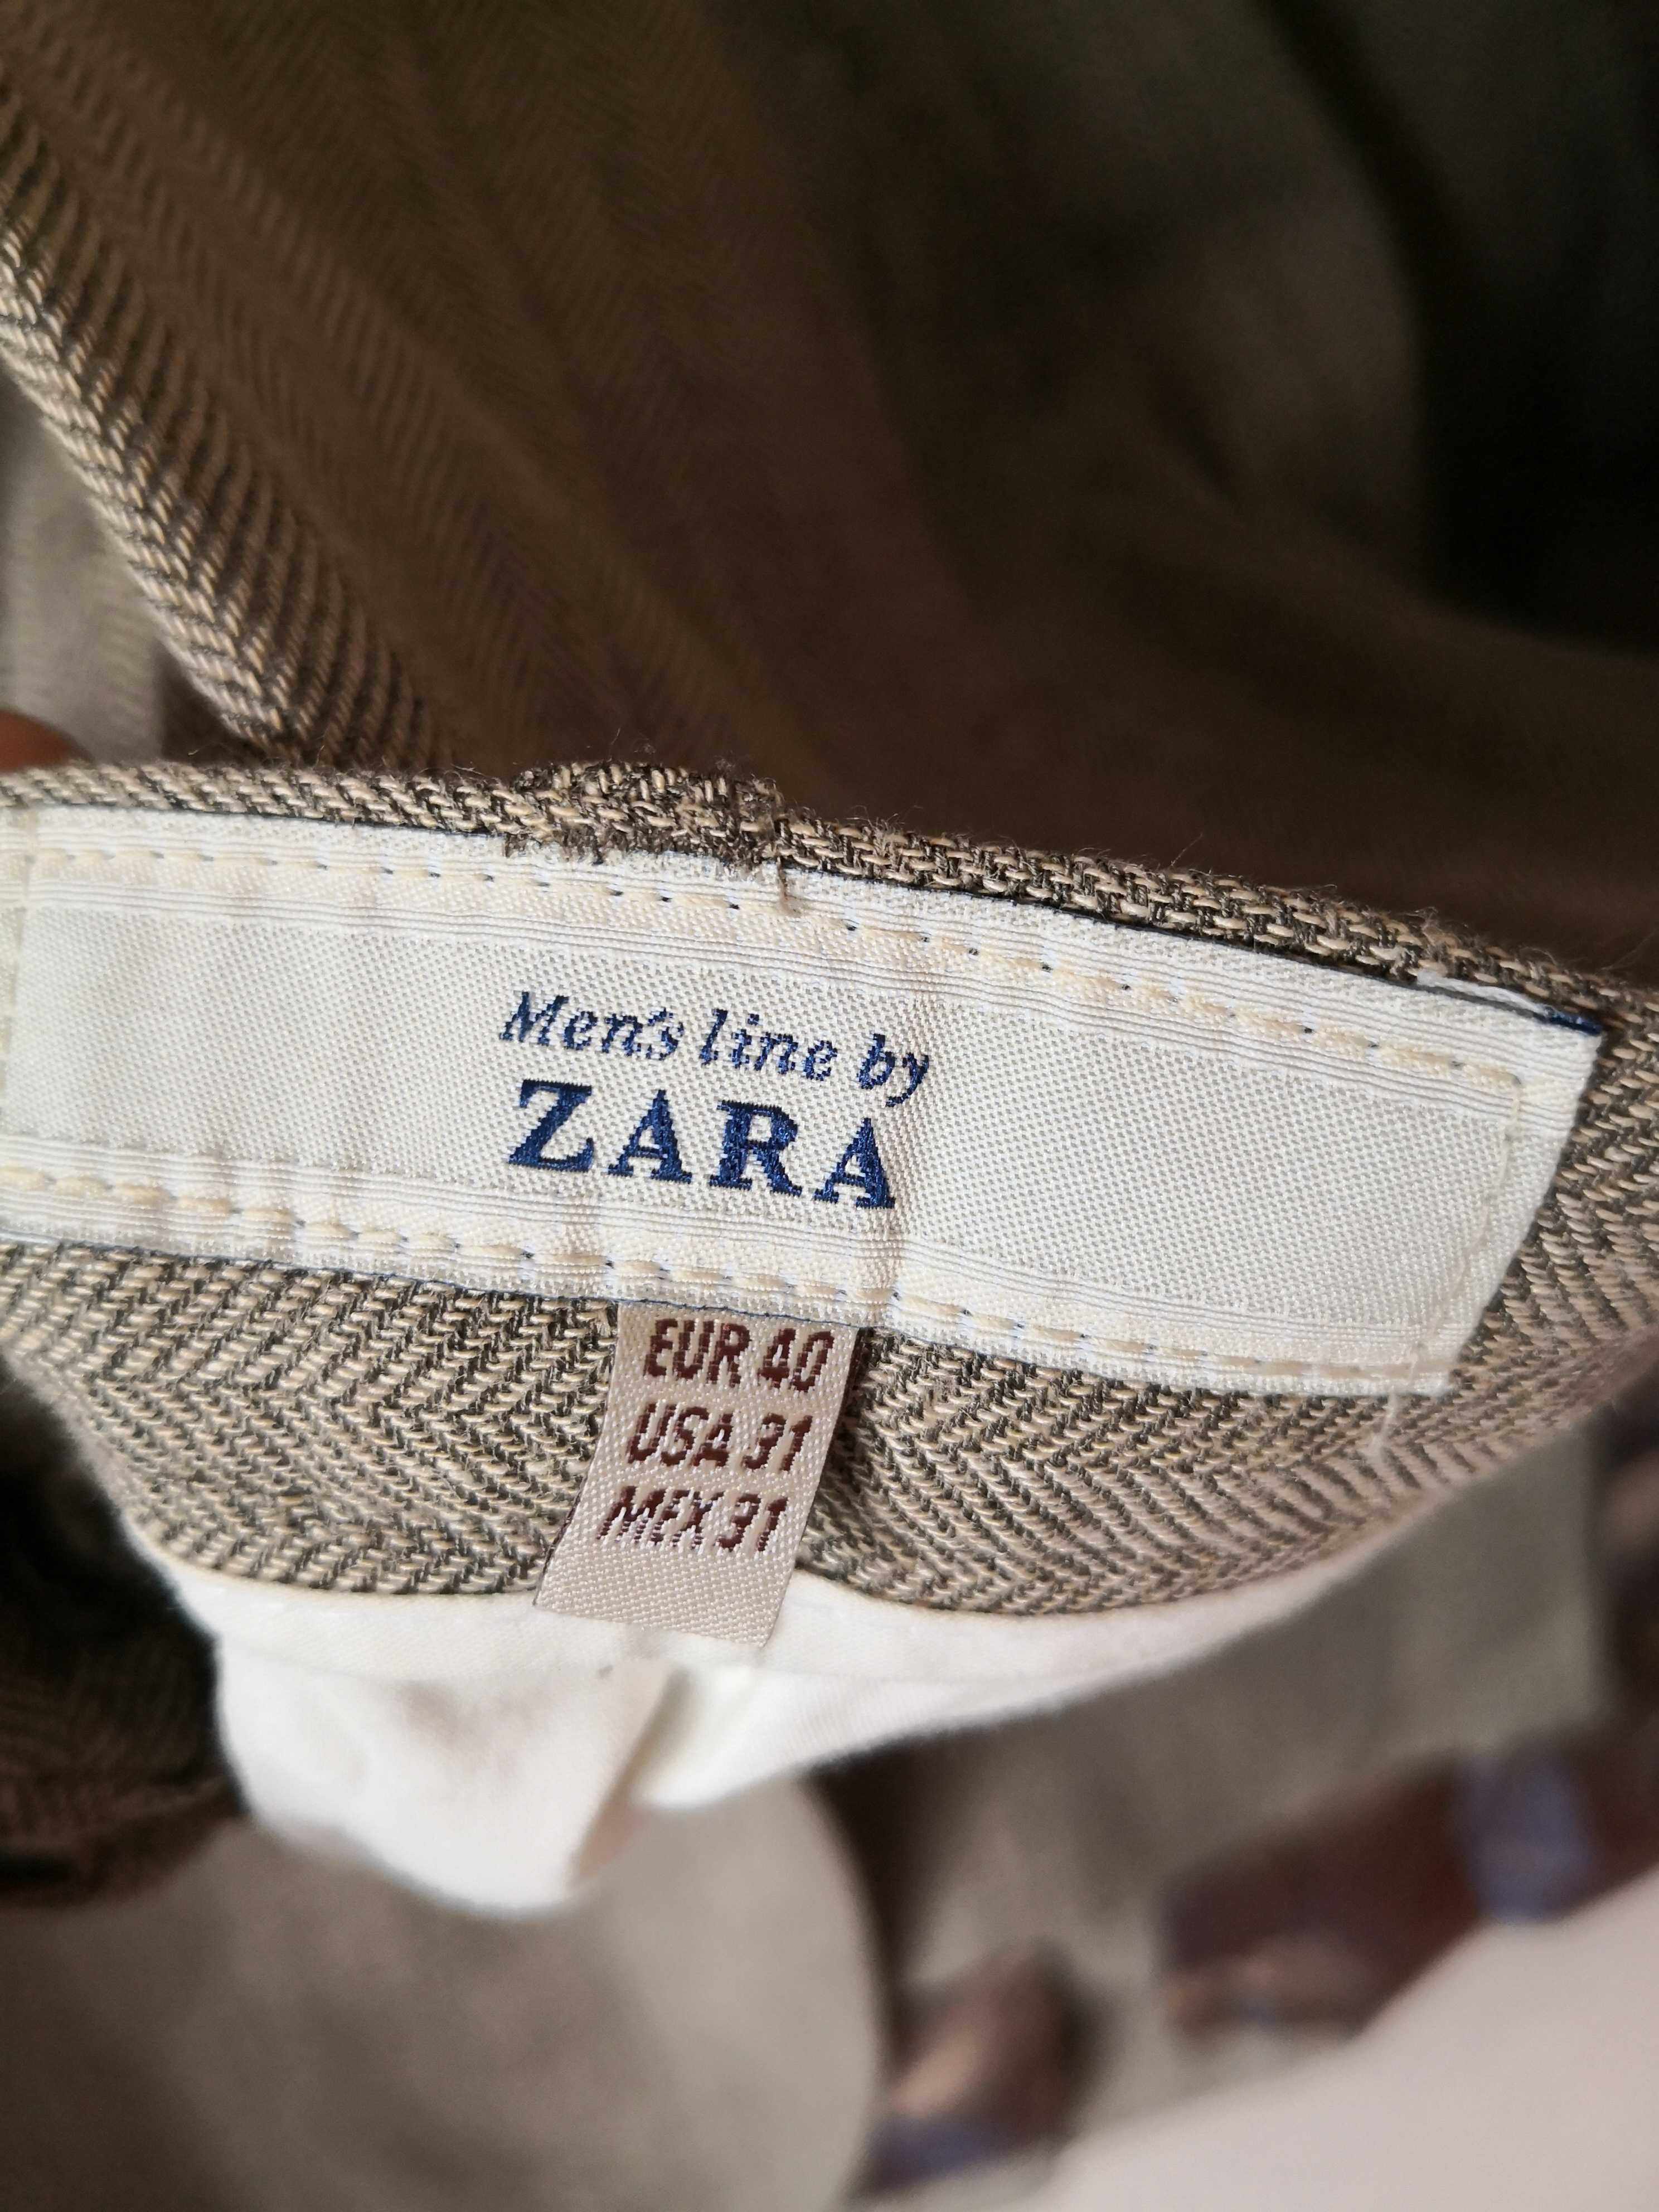 Fato completo Zara.